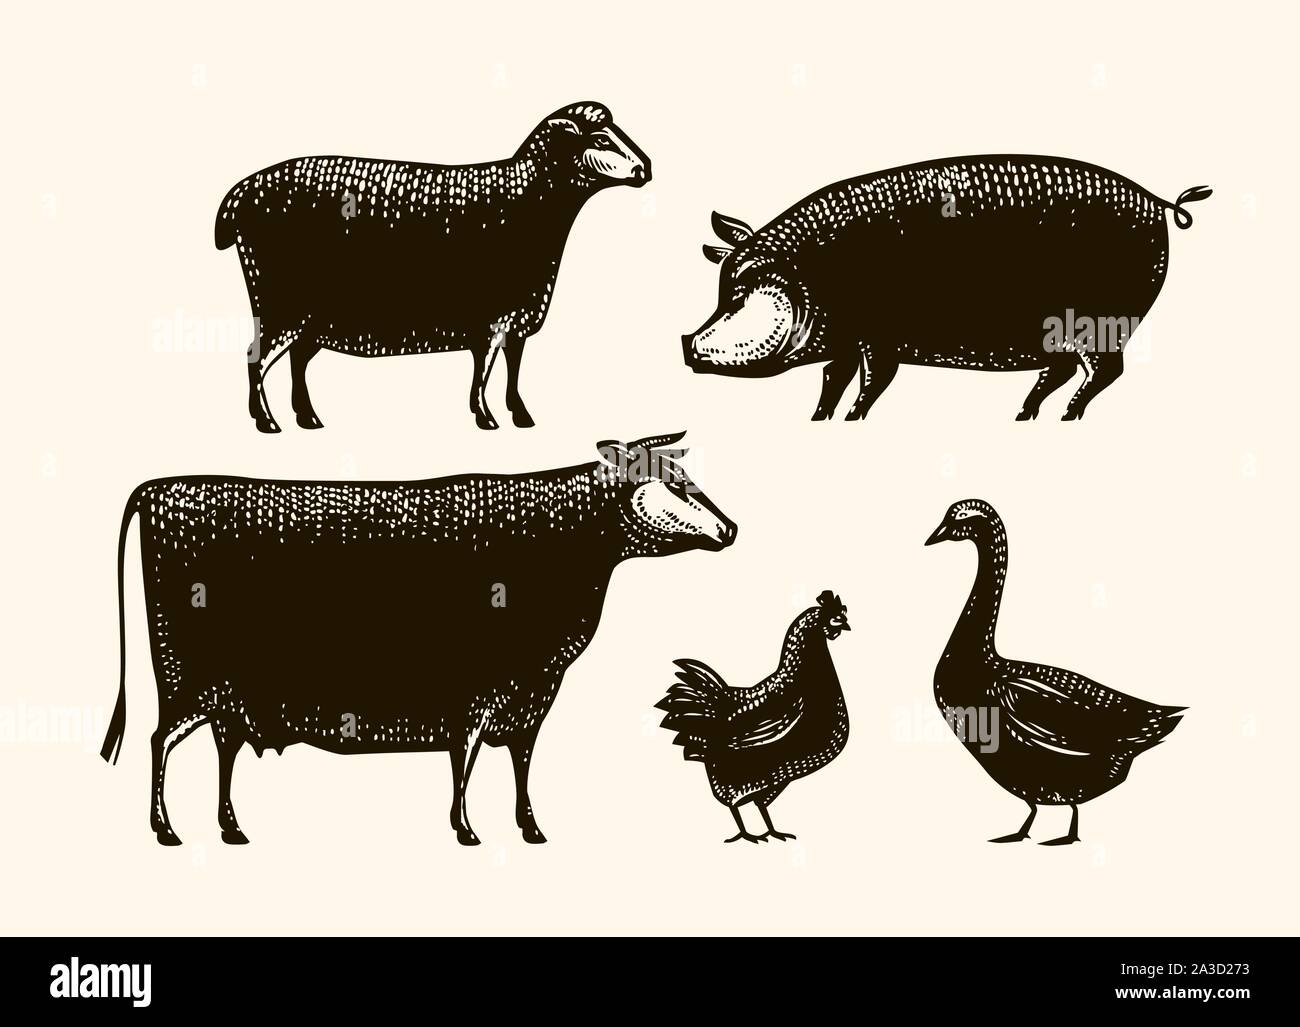 Bauernhof Tiere eingestellt. Landwirtschaft, silhouette Vector Illustration Stock Vektor